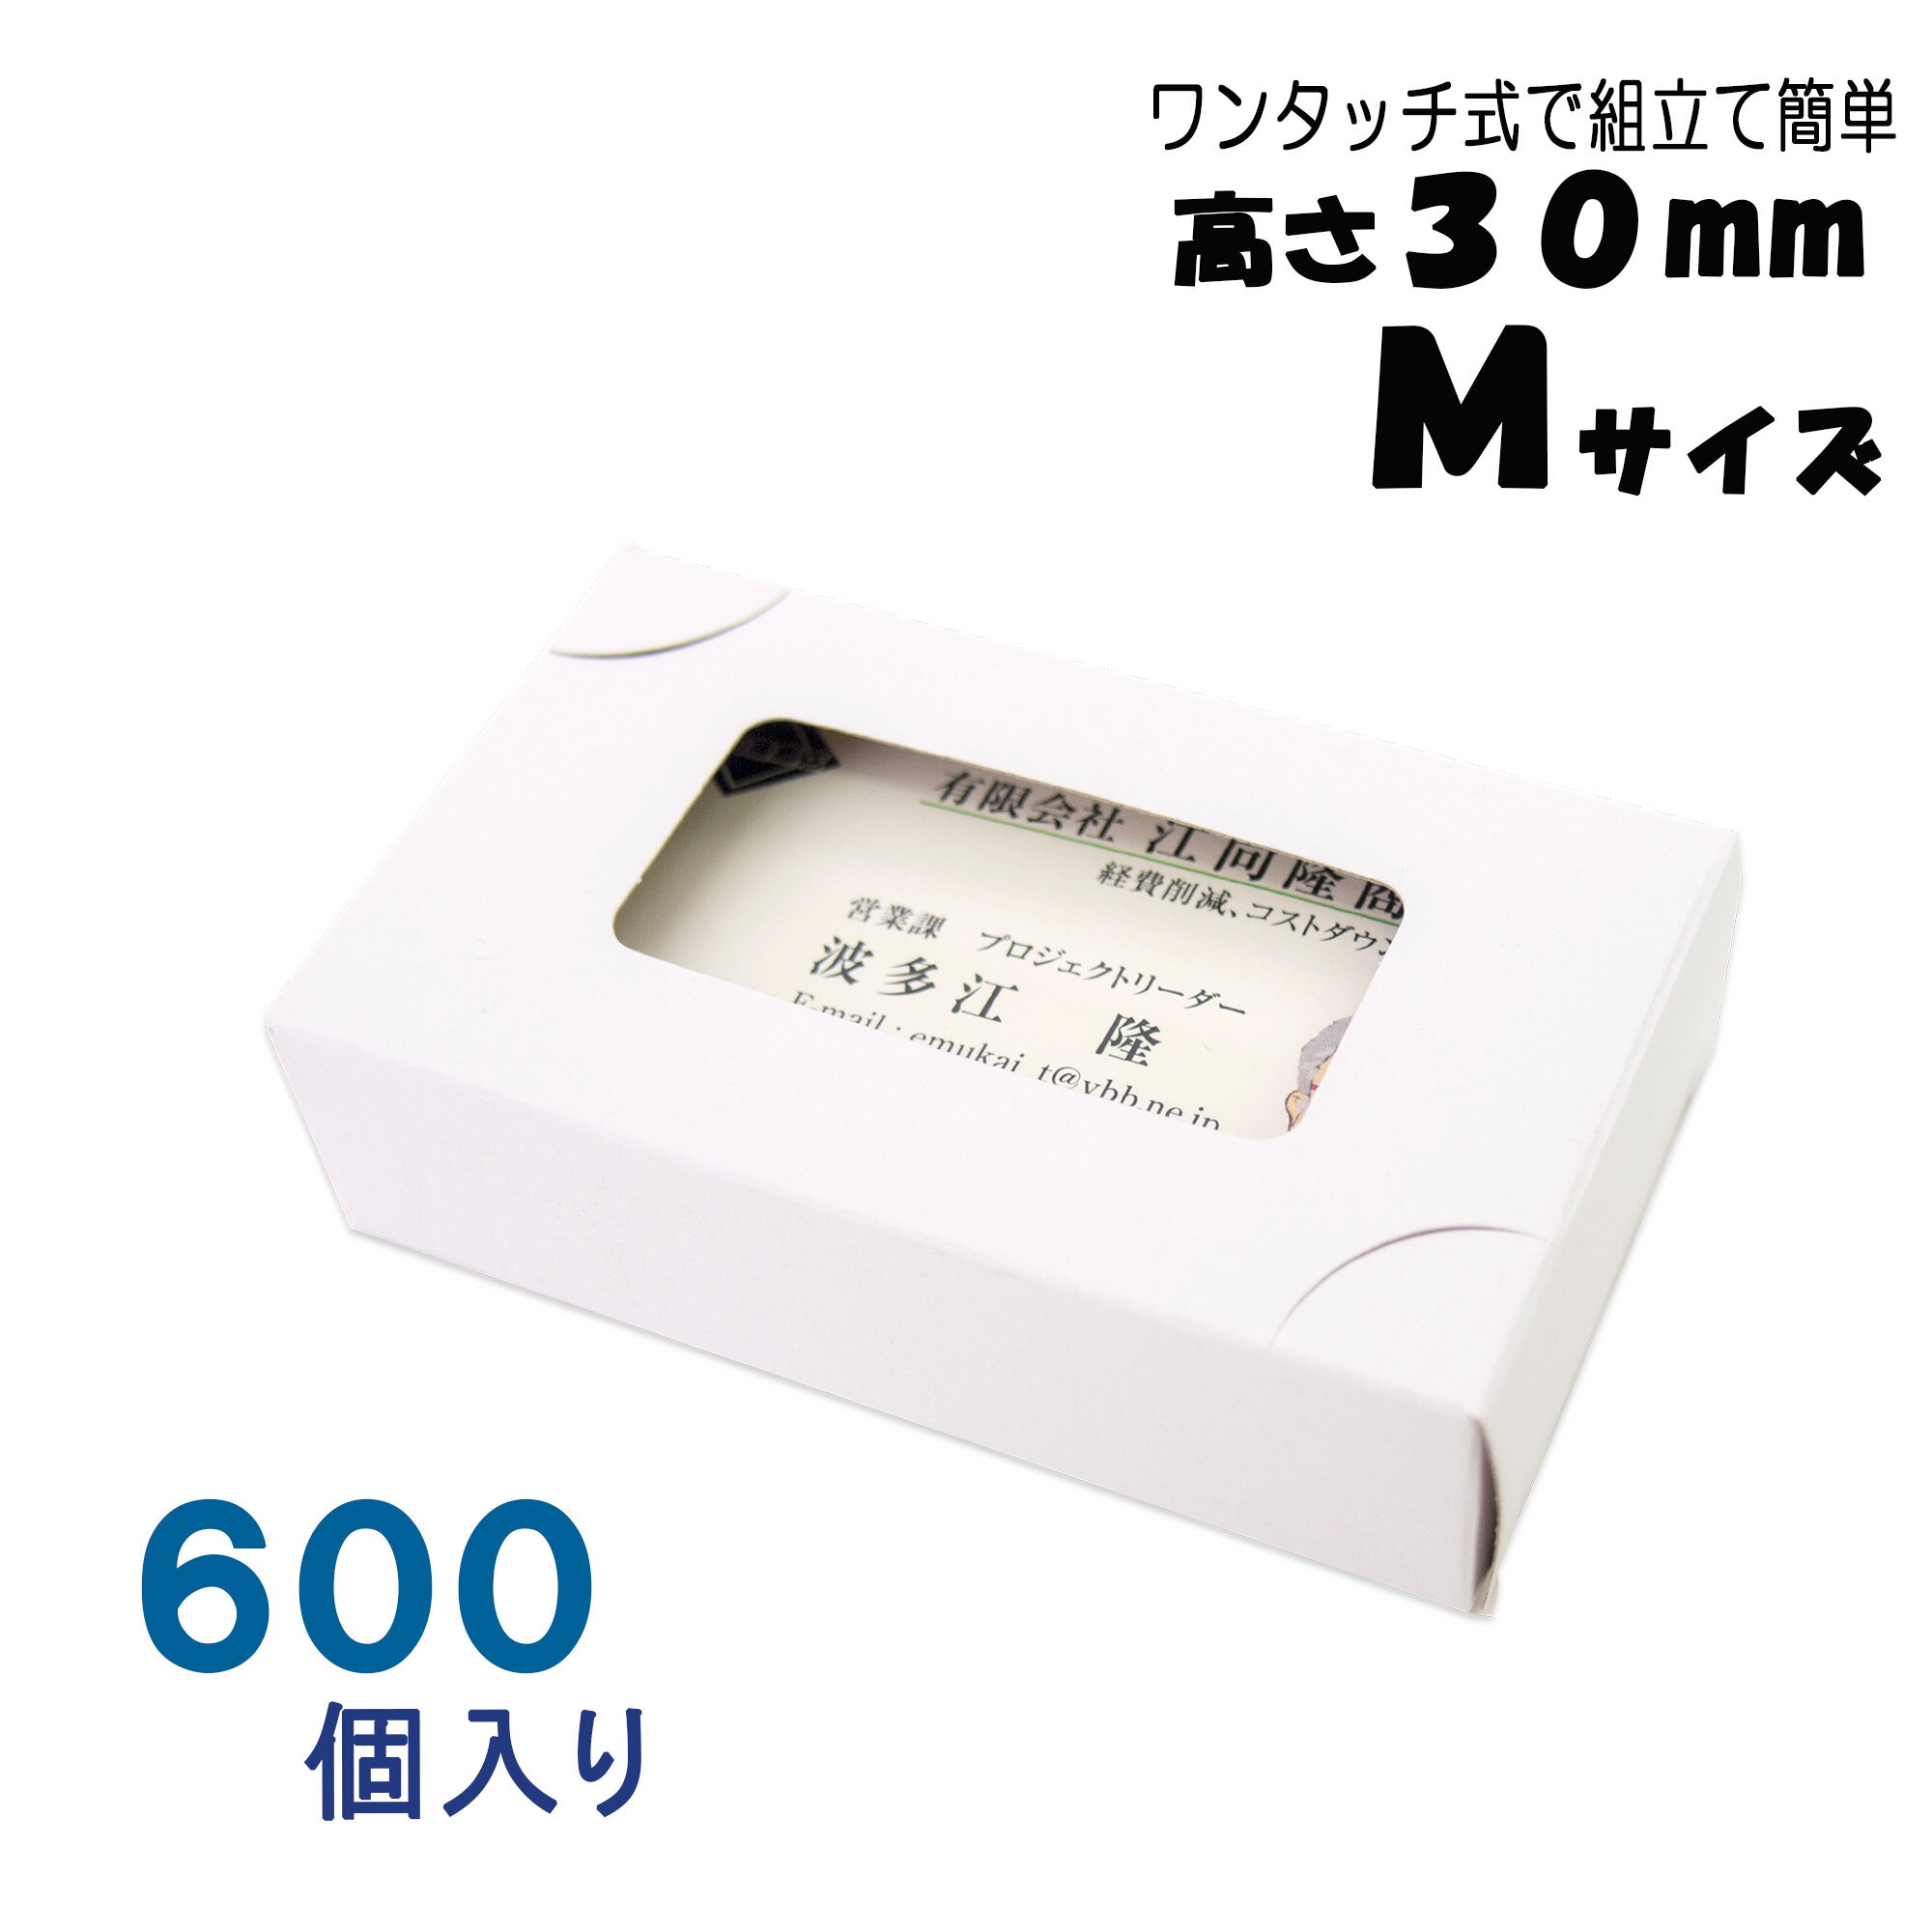 名刺ケース 紙製 名刺箱 窓あり Mサイズ 高さ30mm ワンタッチ式 600個 日本製 送料無料